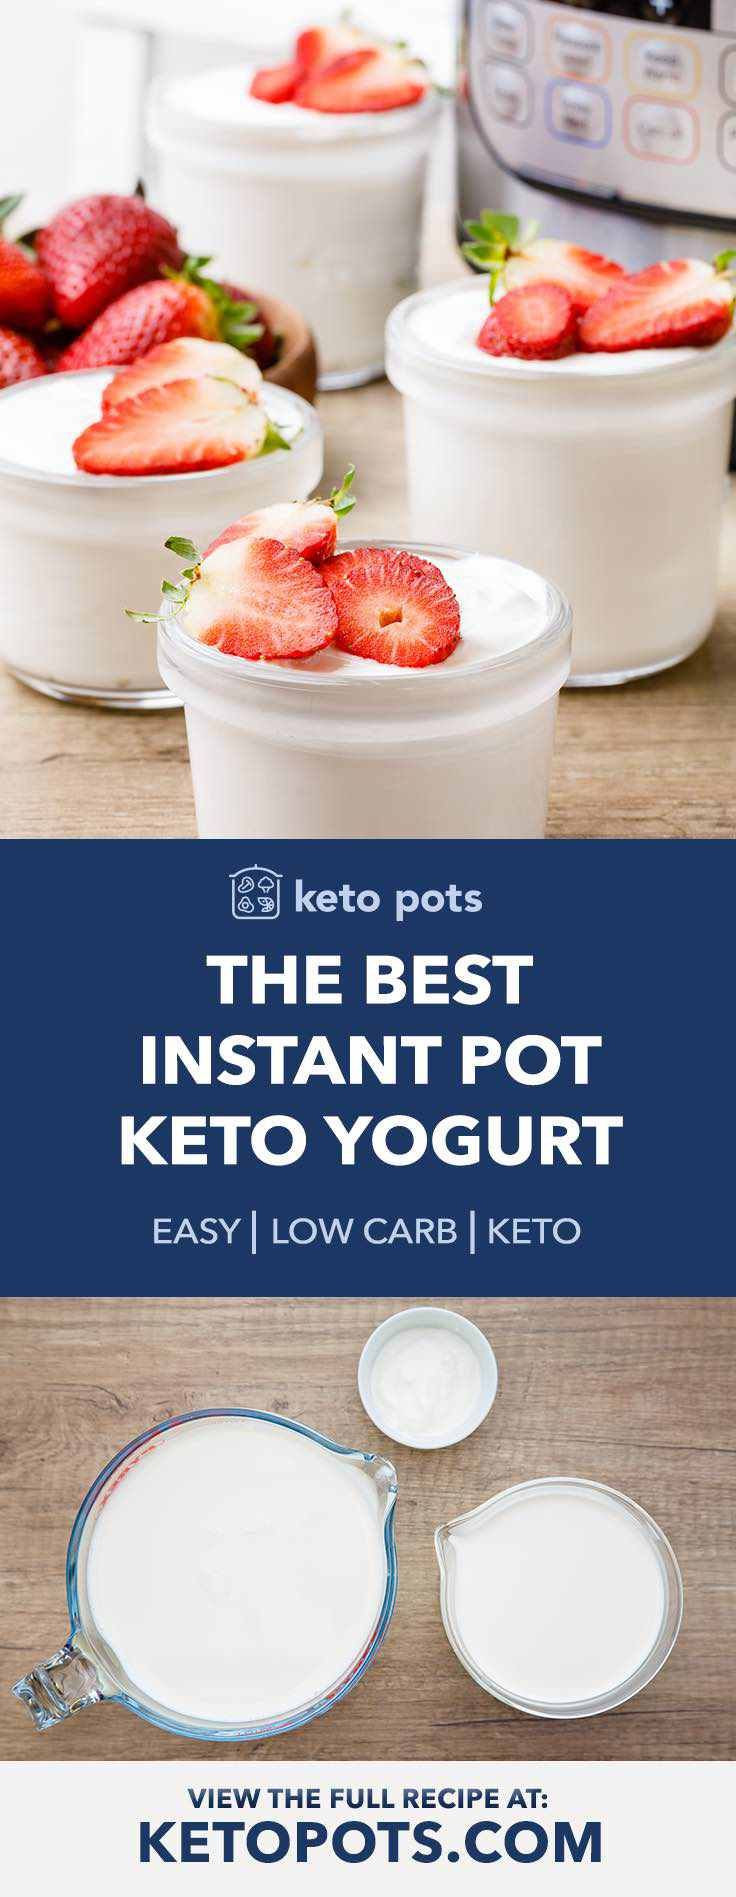 Instant Pot Keto Yogurt Recipes
 How to Make the Best Instant Pot Keto Yogurt The Easy Way